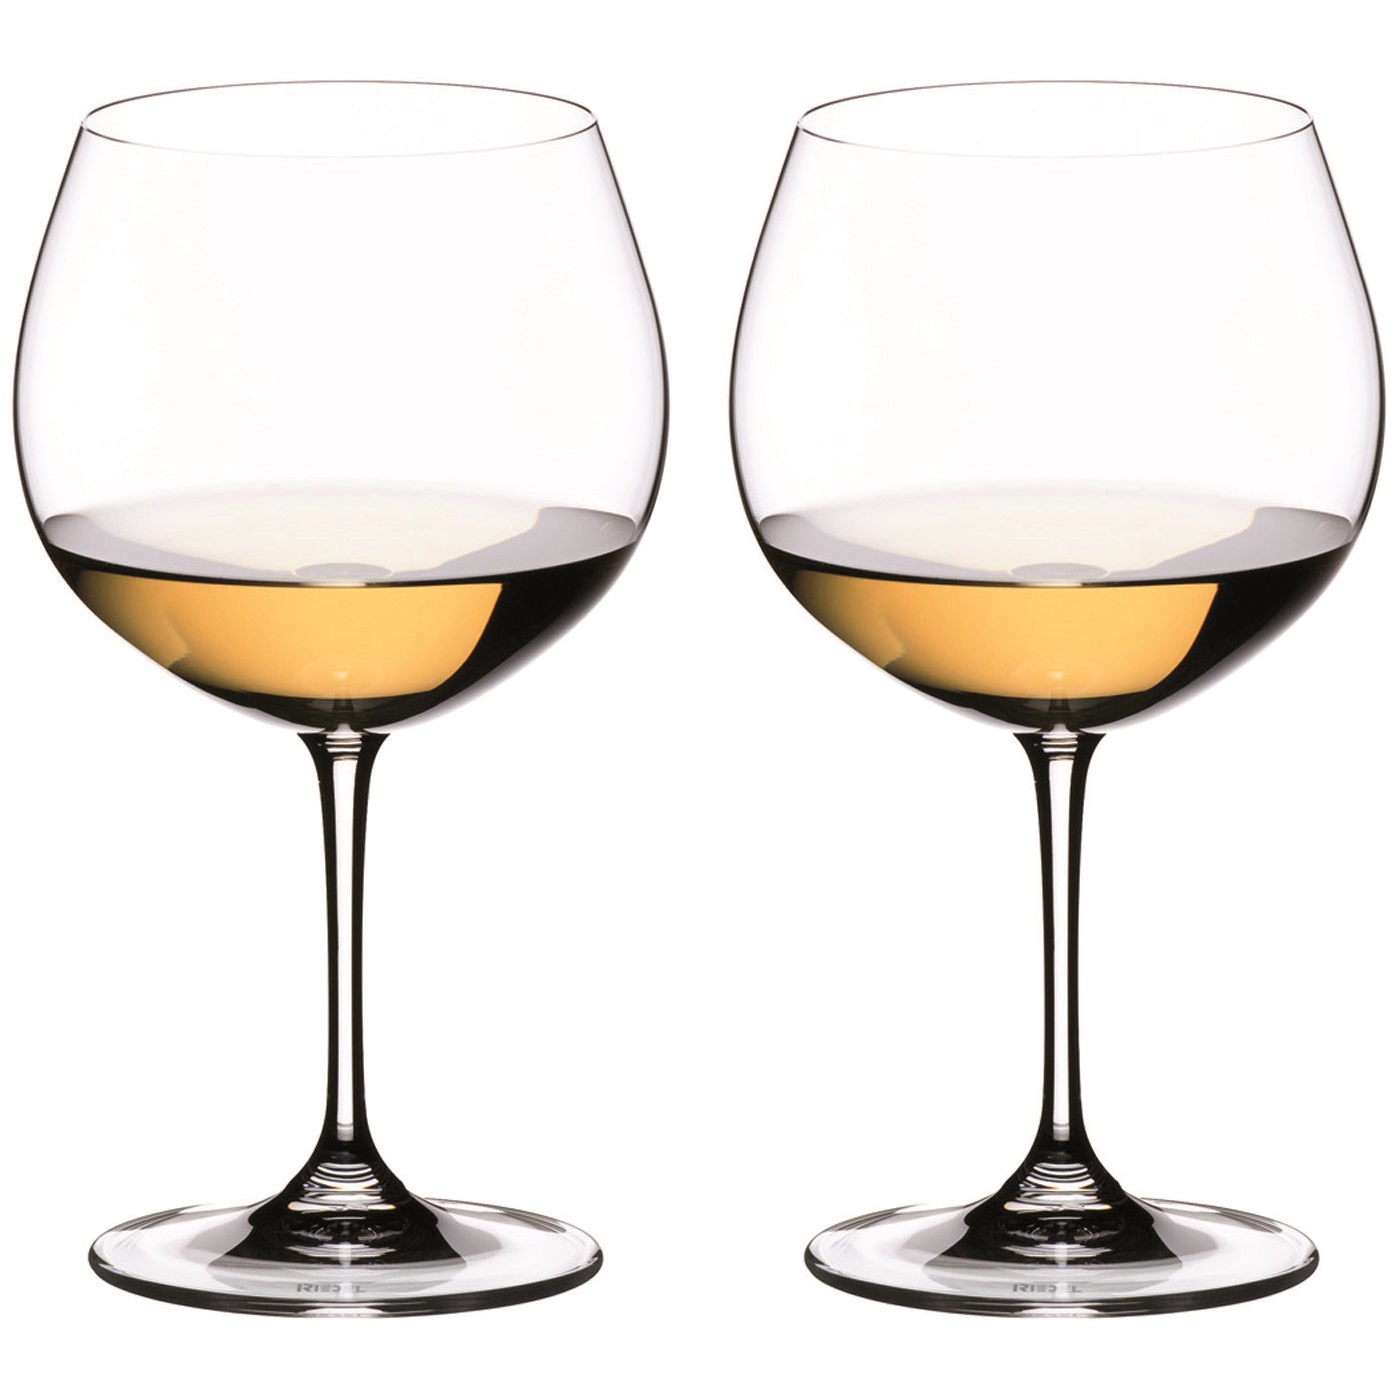 Формы бокалов для вина. Бокалы Ридель Шардоне. Riedel бокал для вина Sommeliers Montrachet 4400/07 520 мл. Набор бокалов Riedel 4411/0. Riedel набор бокалов для крепленого вина Vinum Port 6416/60 2 шт. 240 Мл.